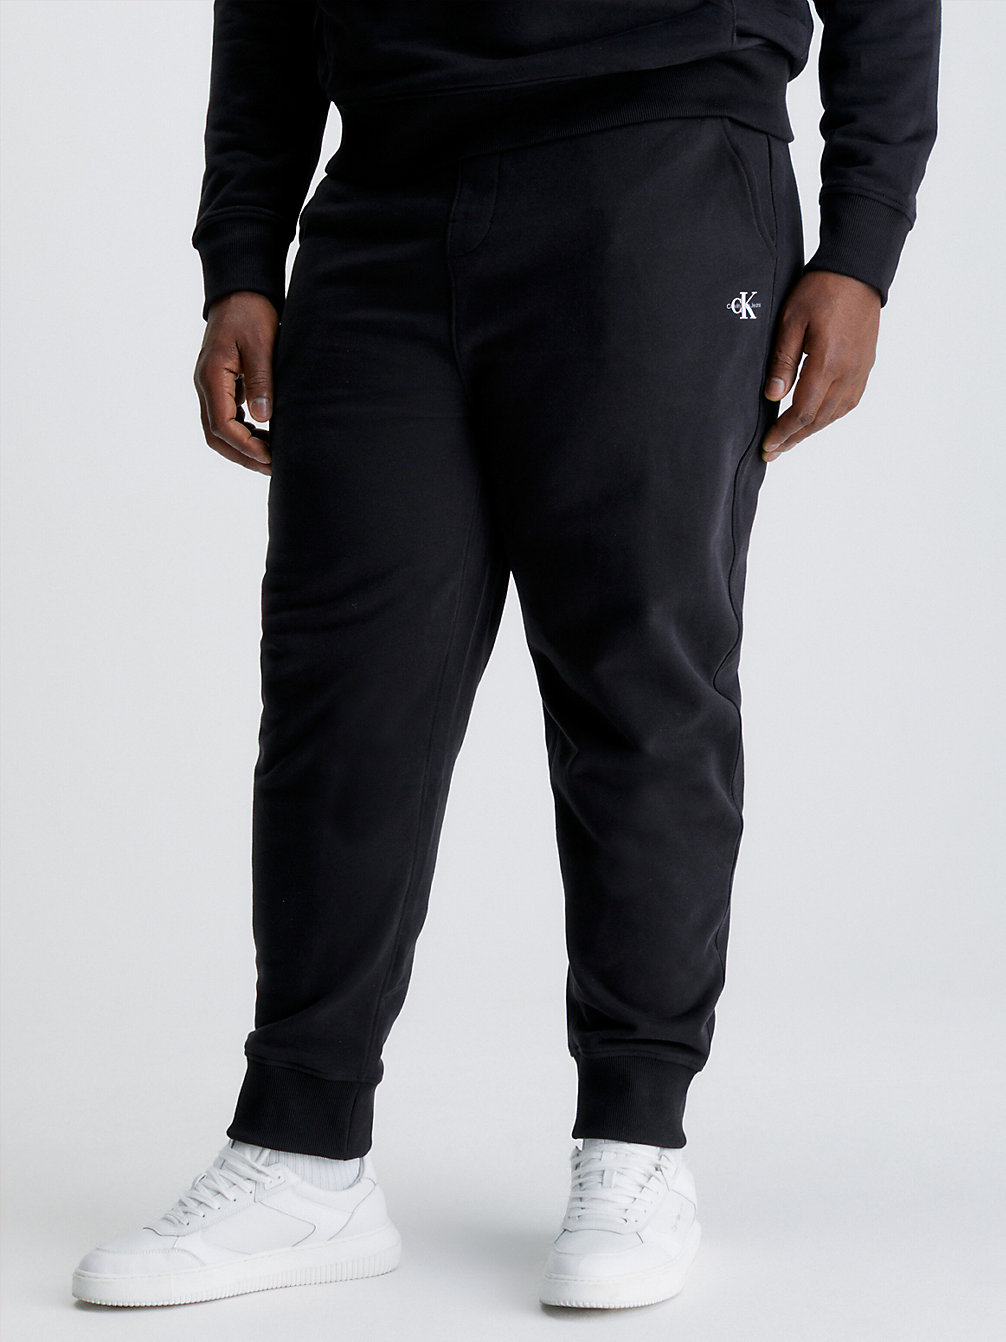 CK BLACK Pantalon De Jogging Grande Taille Avec Monogramme undefined hommes Calvin Klein